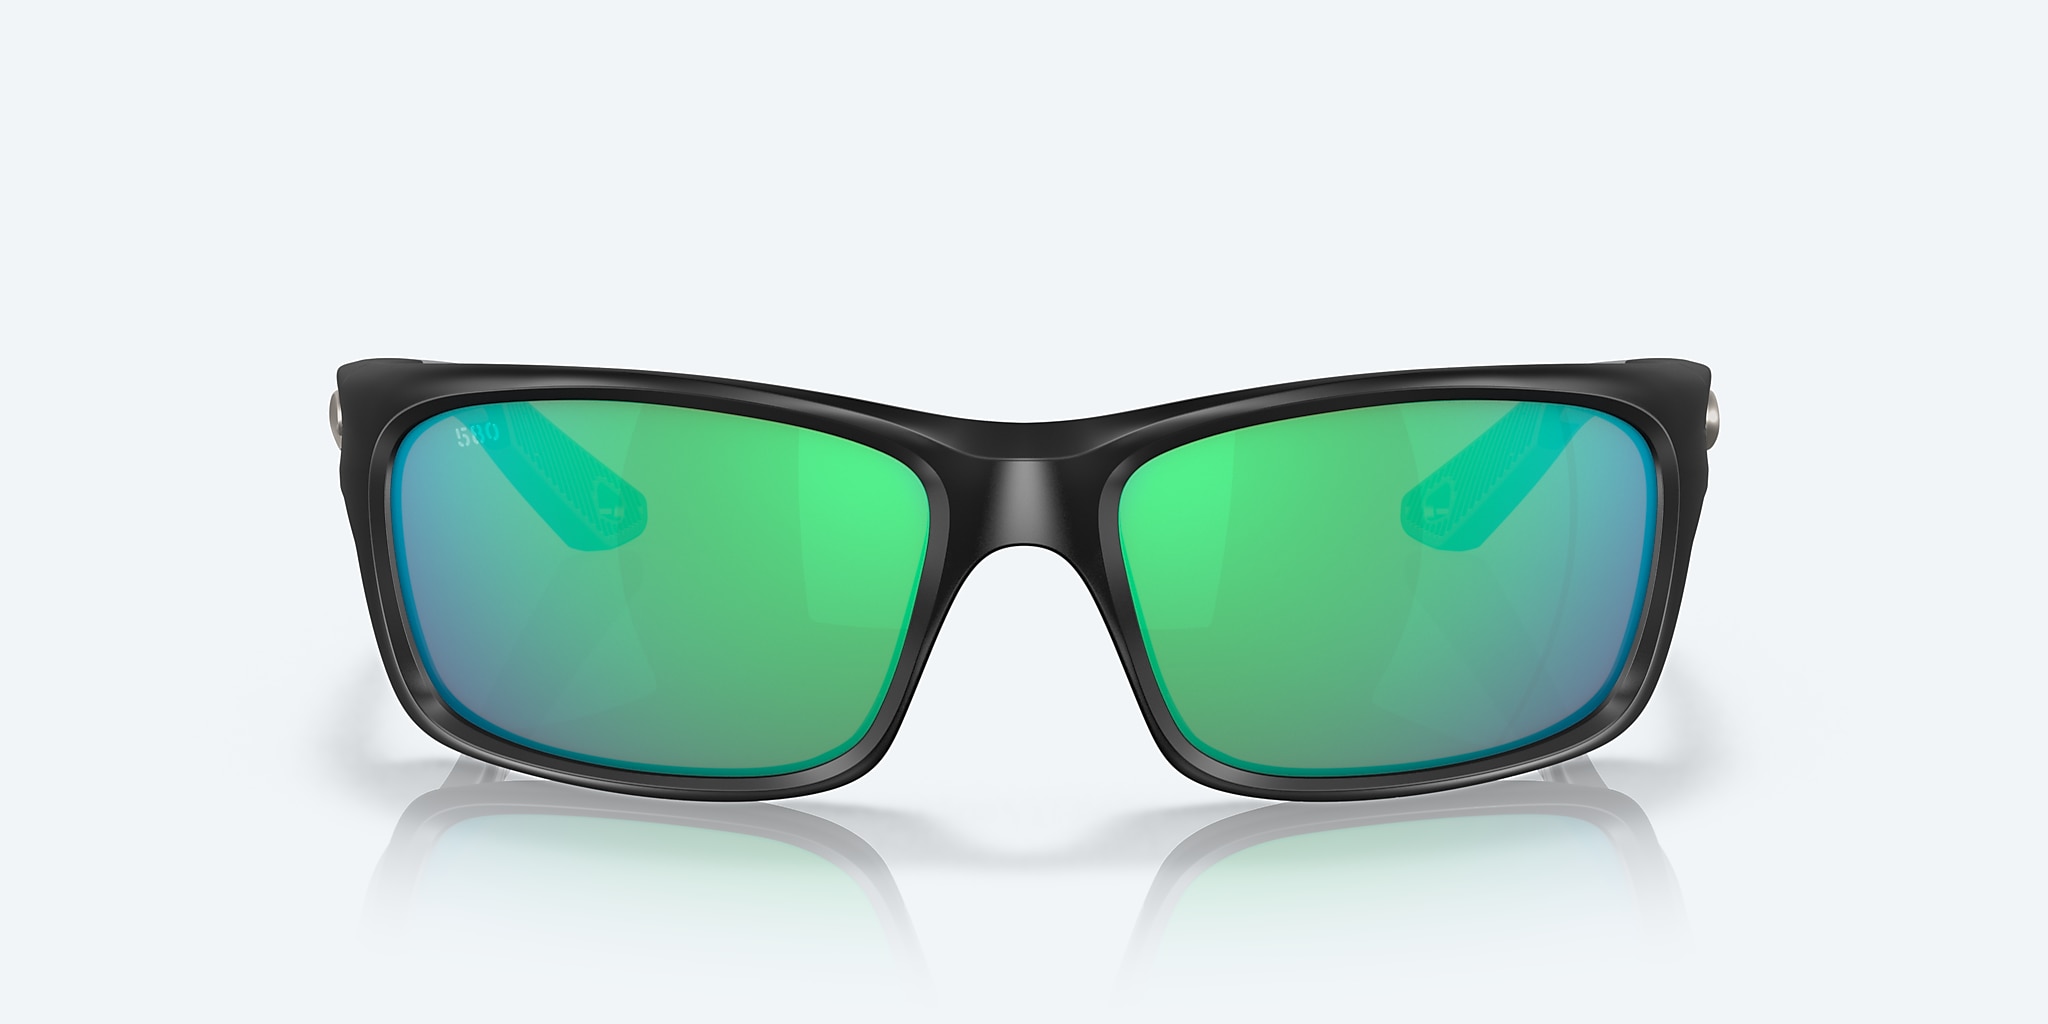 Jose Polarized Sunglasses in Green Mirror